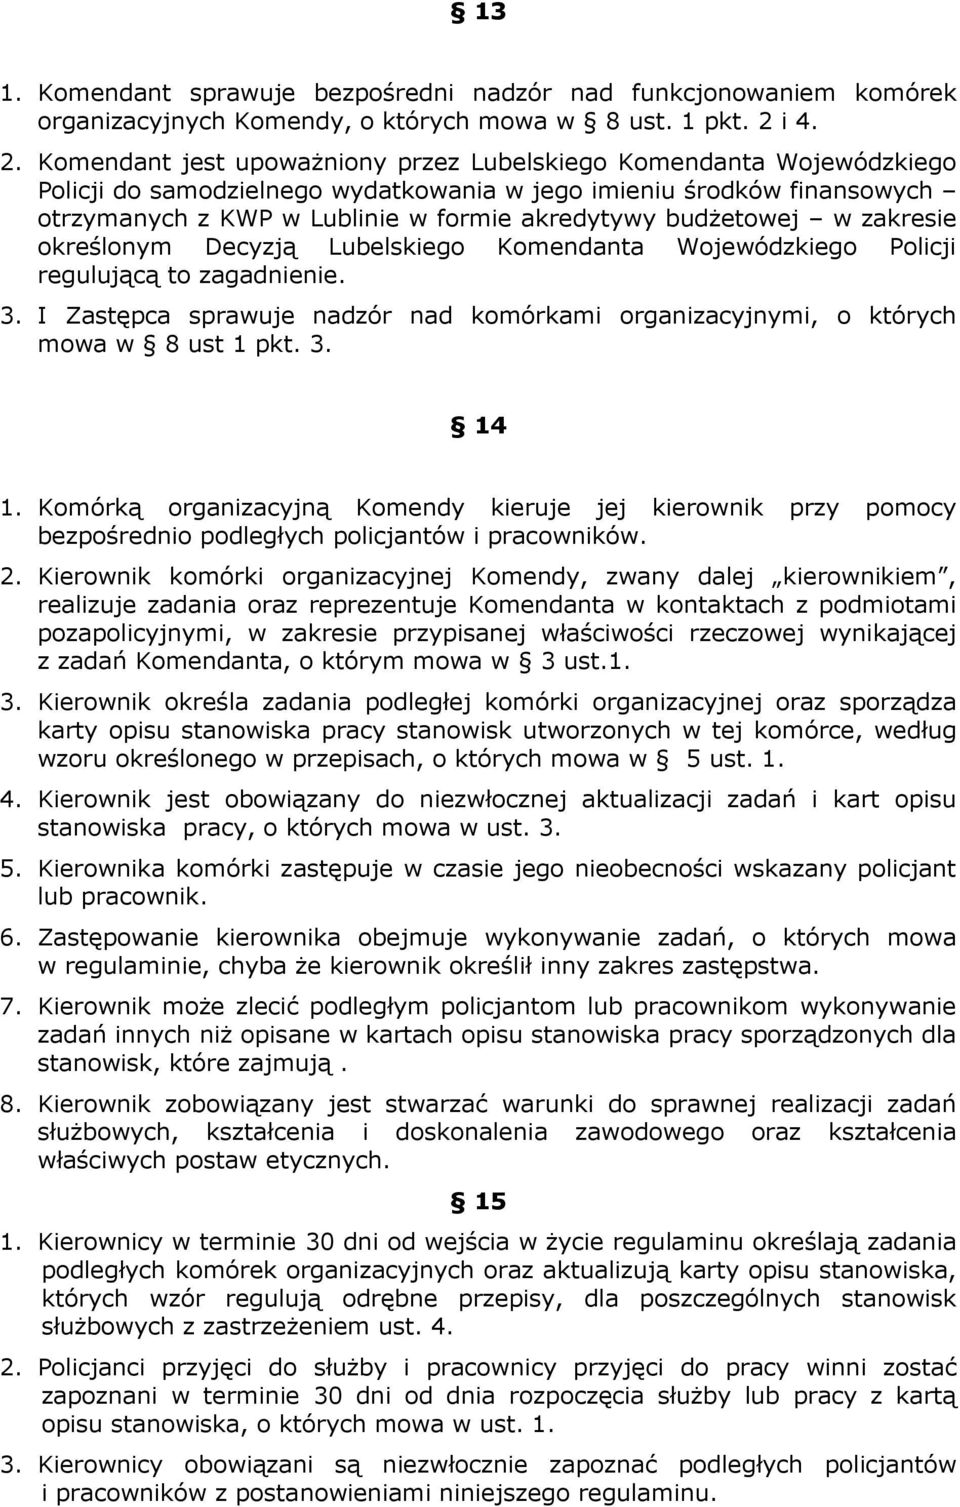 Komendant jest upowaŝniony przez Lubelskiego Komendanta Wojewódzkiego Policji do samodzielnego wydatkowania w jego imieniu środków finansowych otrzymanych z KWP w Lublinie w formie akredytywy